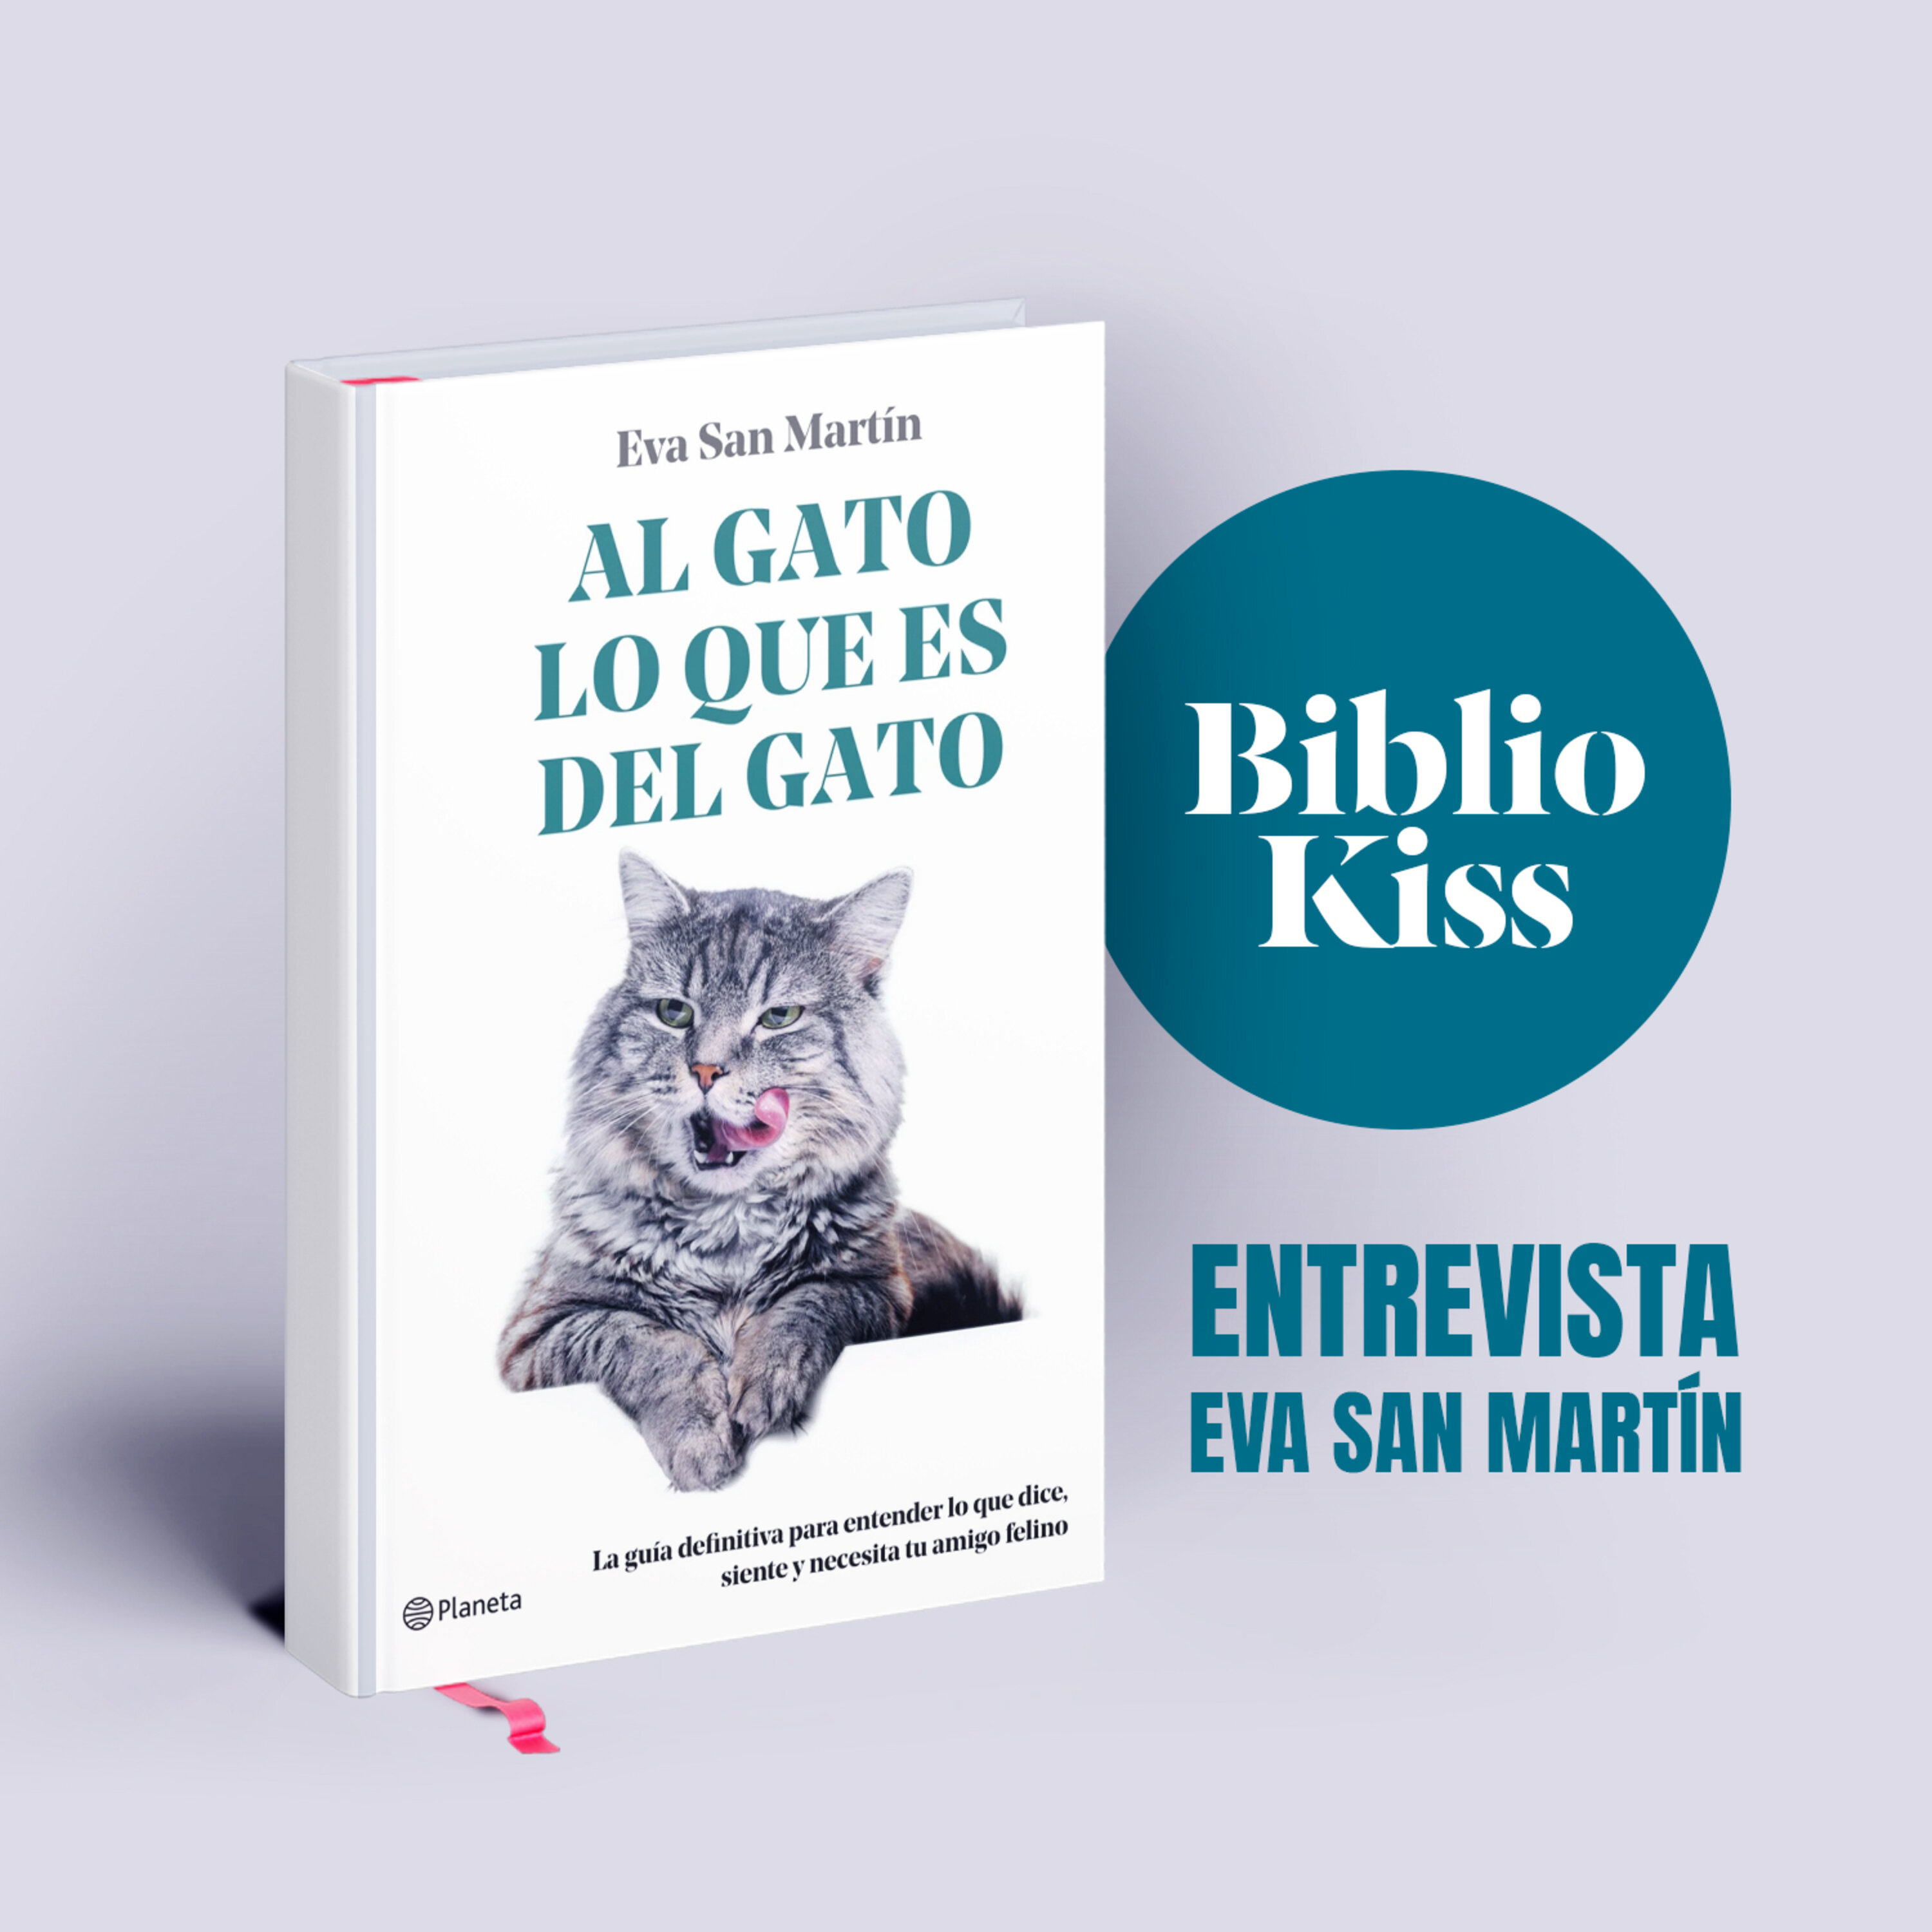 Eva San Martín nos presenta "Al gato lo que es del gato"